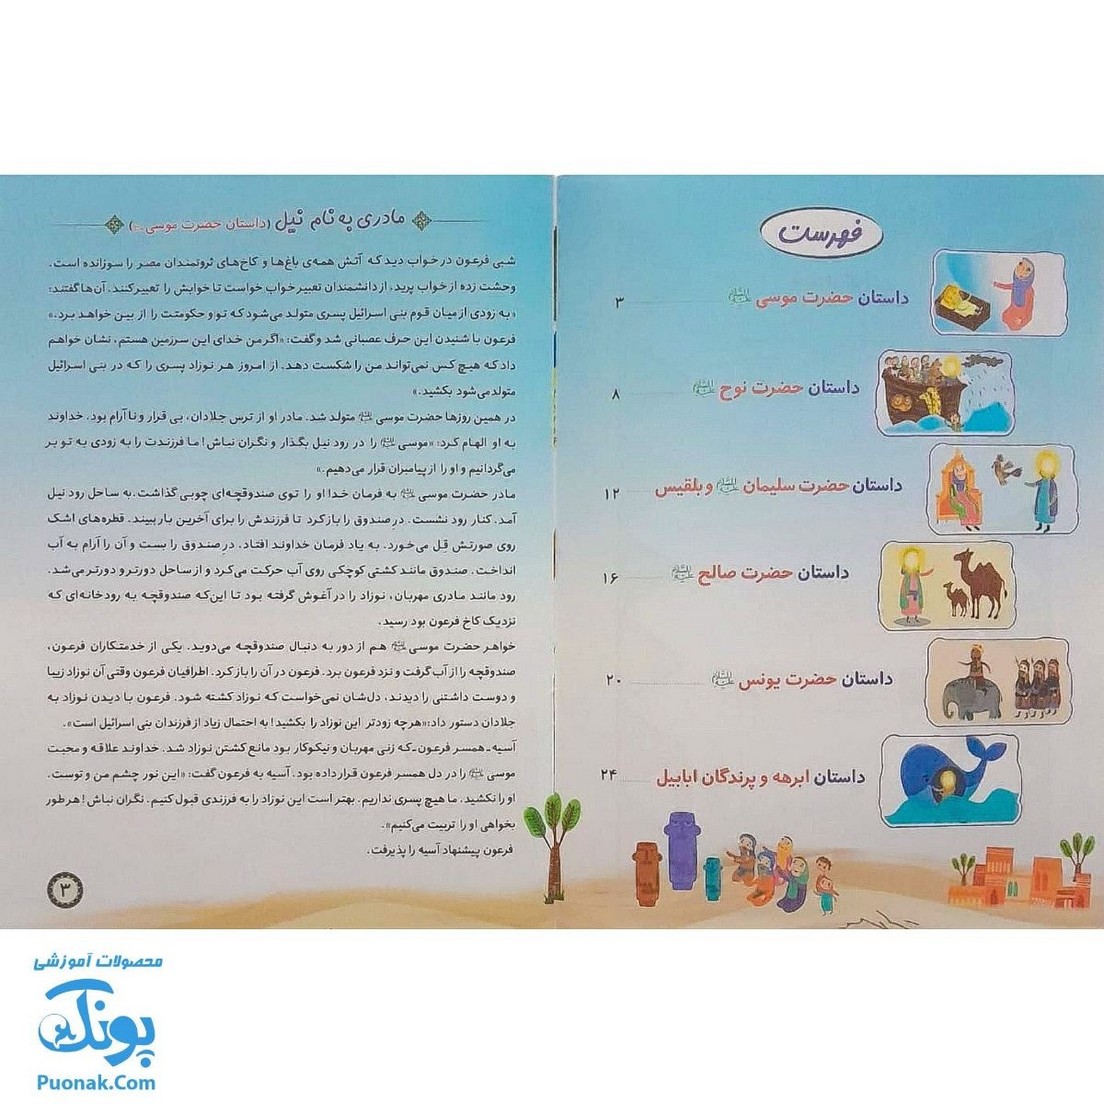 کتاب قصه های قرآنی ۱ داستان کودک سرگرمی شش داستان ، شش بازی به همراه مهره و تاس